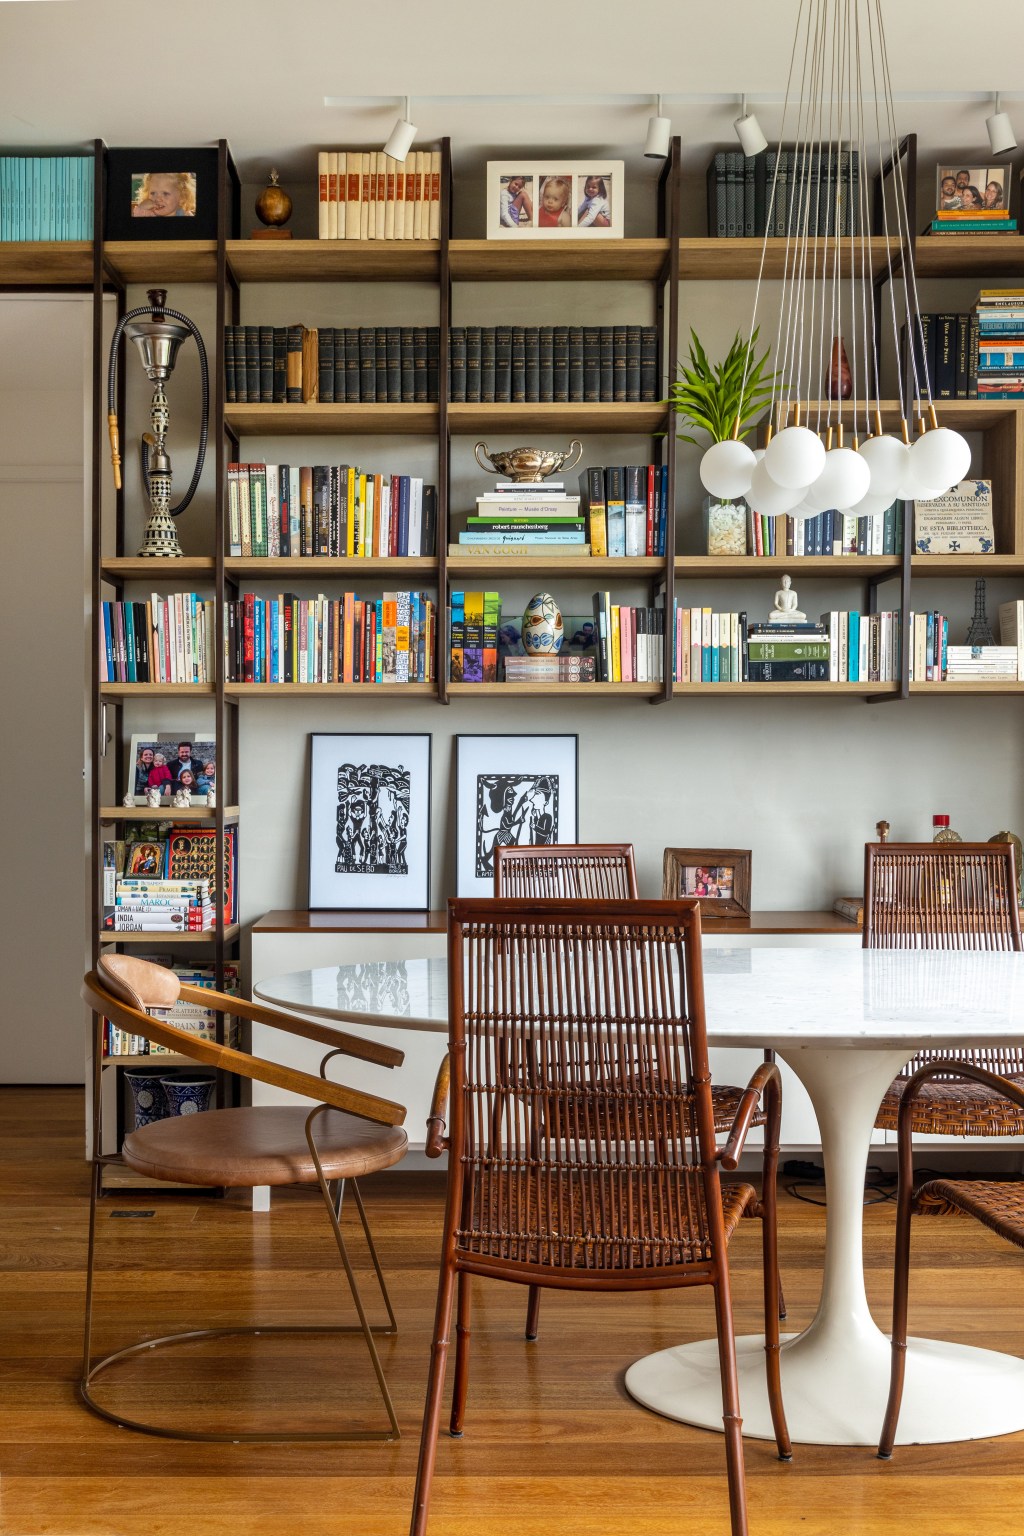 Sala com escada; biblioteca; tapete colorido; poltrona Eames; mesa de jantar